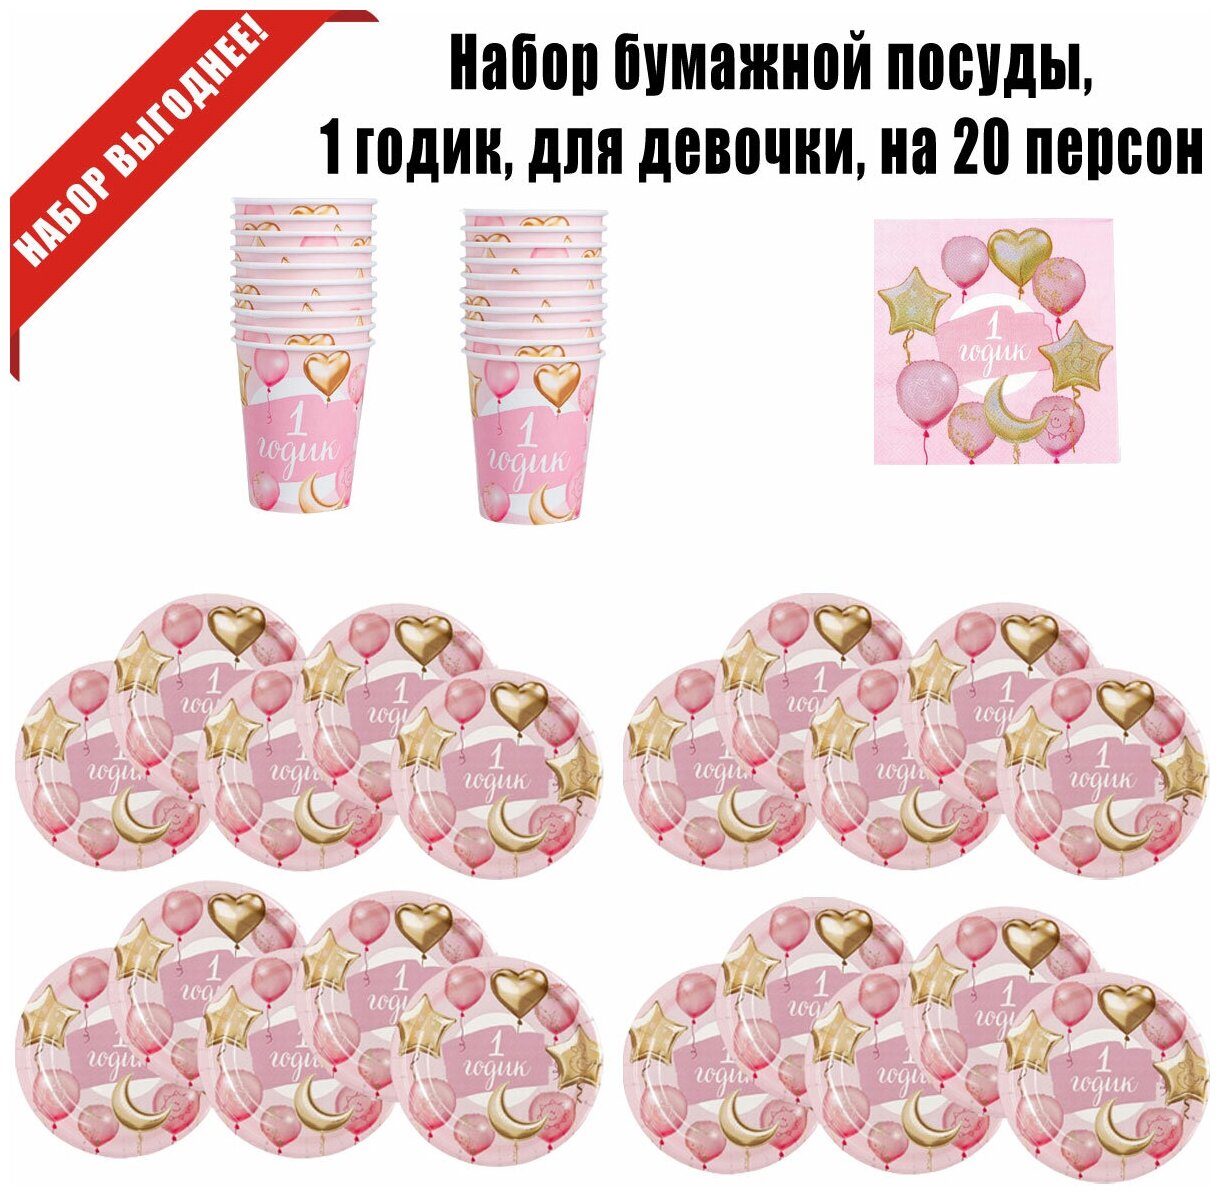 Набор бумажной посуды, 1 годик, для девочки, цвет розовый, на 20 персон - фотография № 2